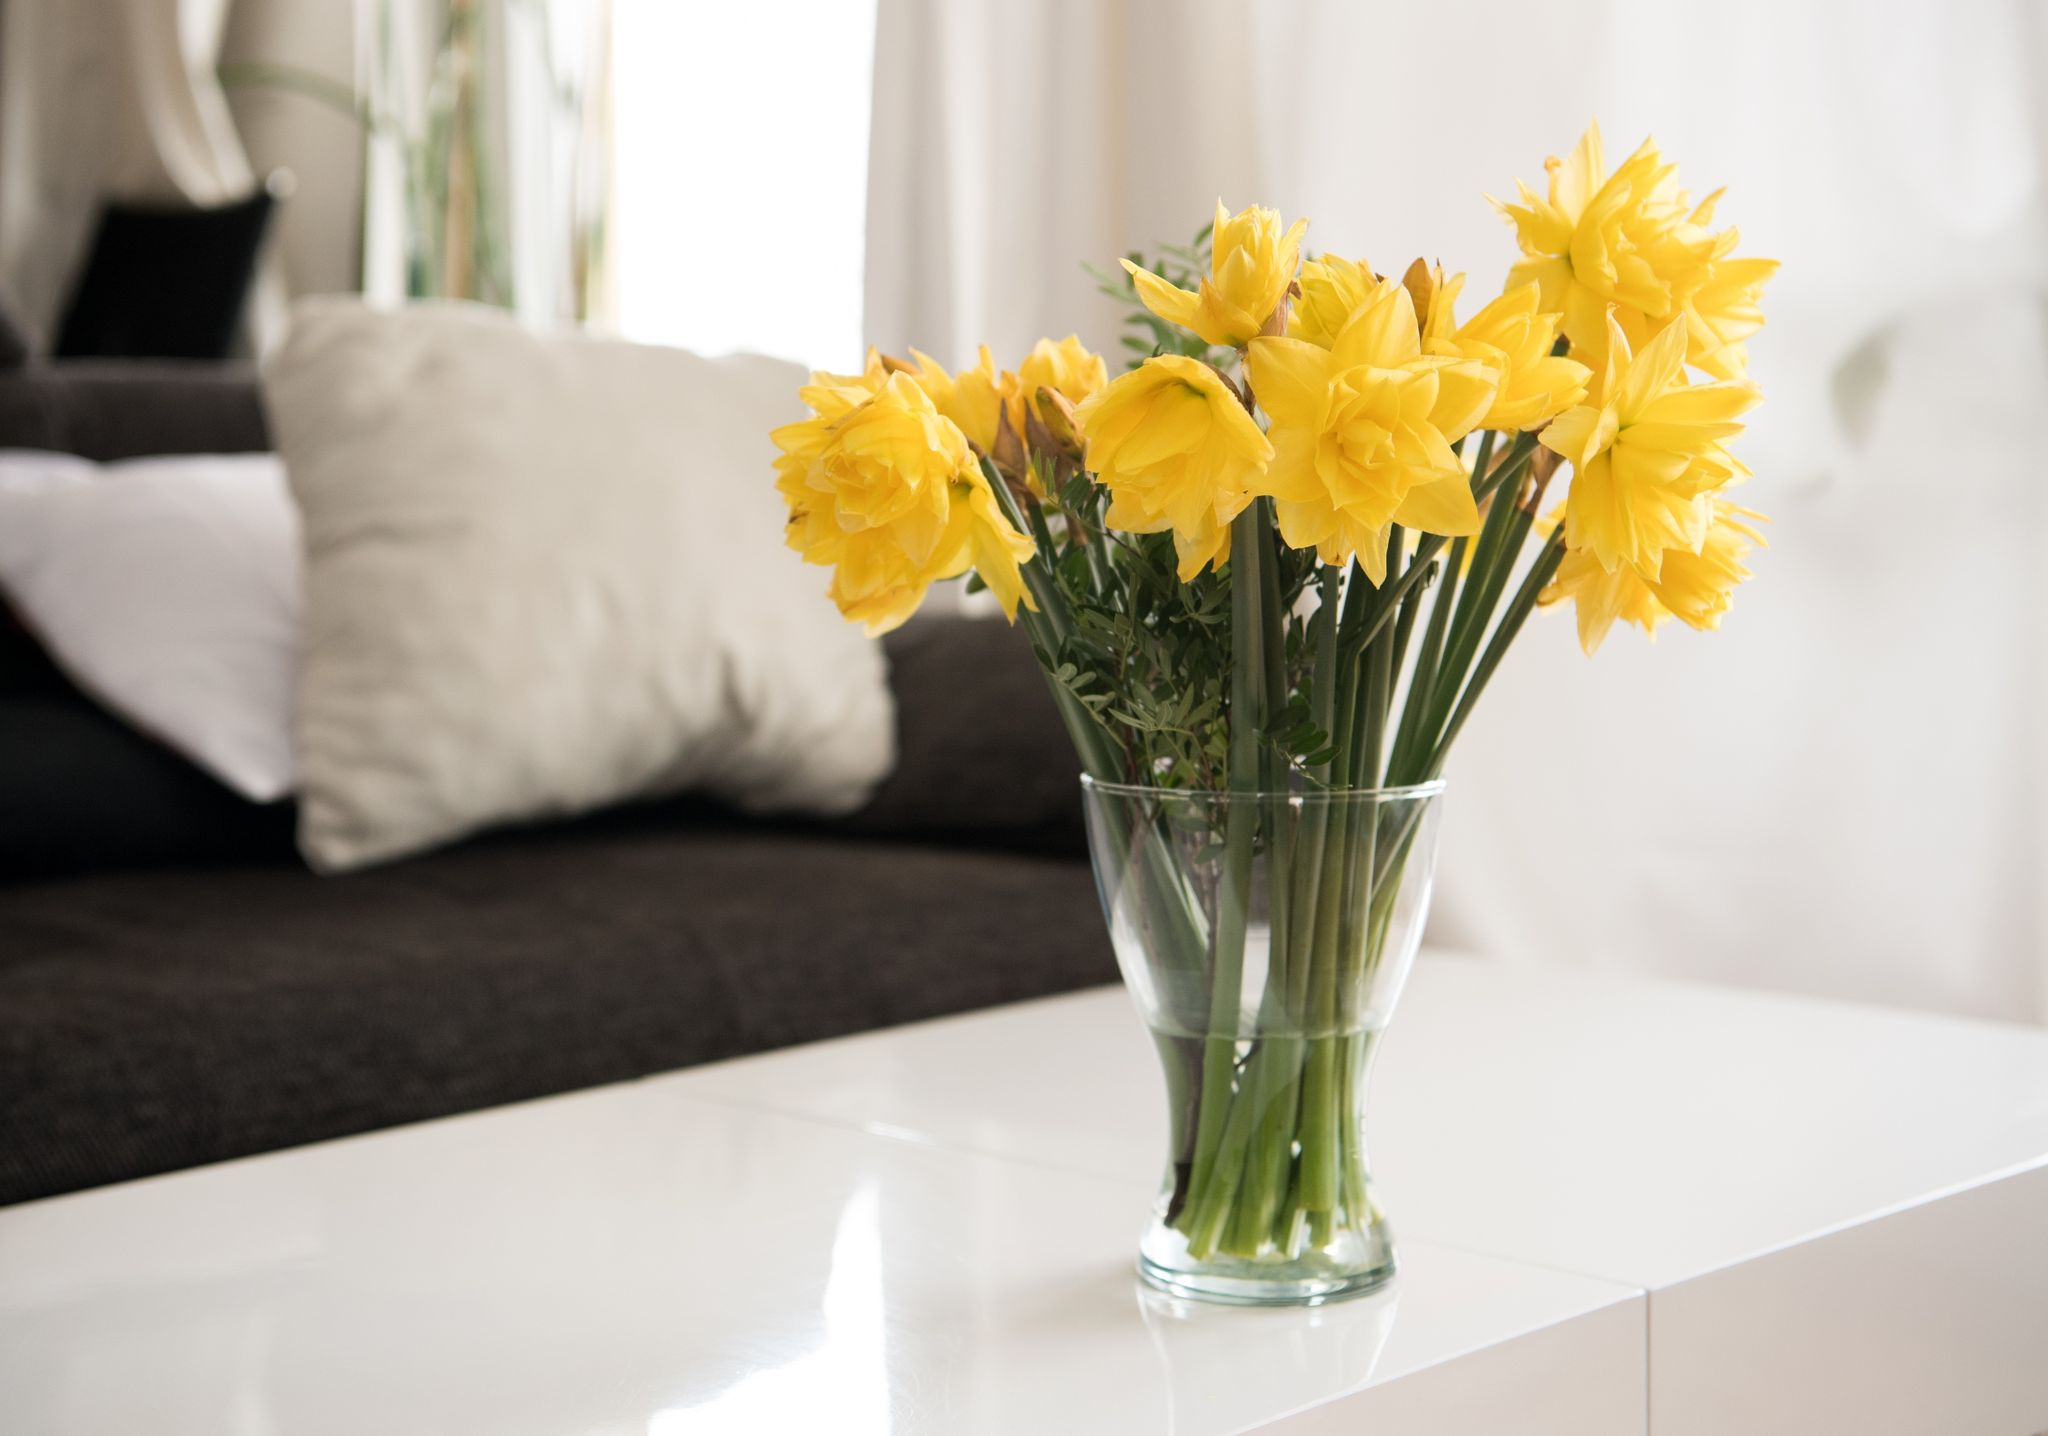 Ehe man sie zu anderen Schnittblumen in die Vase gibt, sollten Narzissen 24 Stunden separat im Wasser stehen.